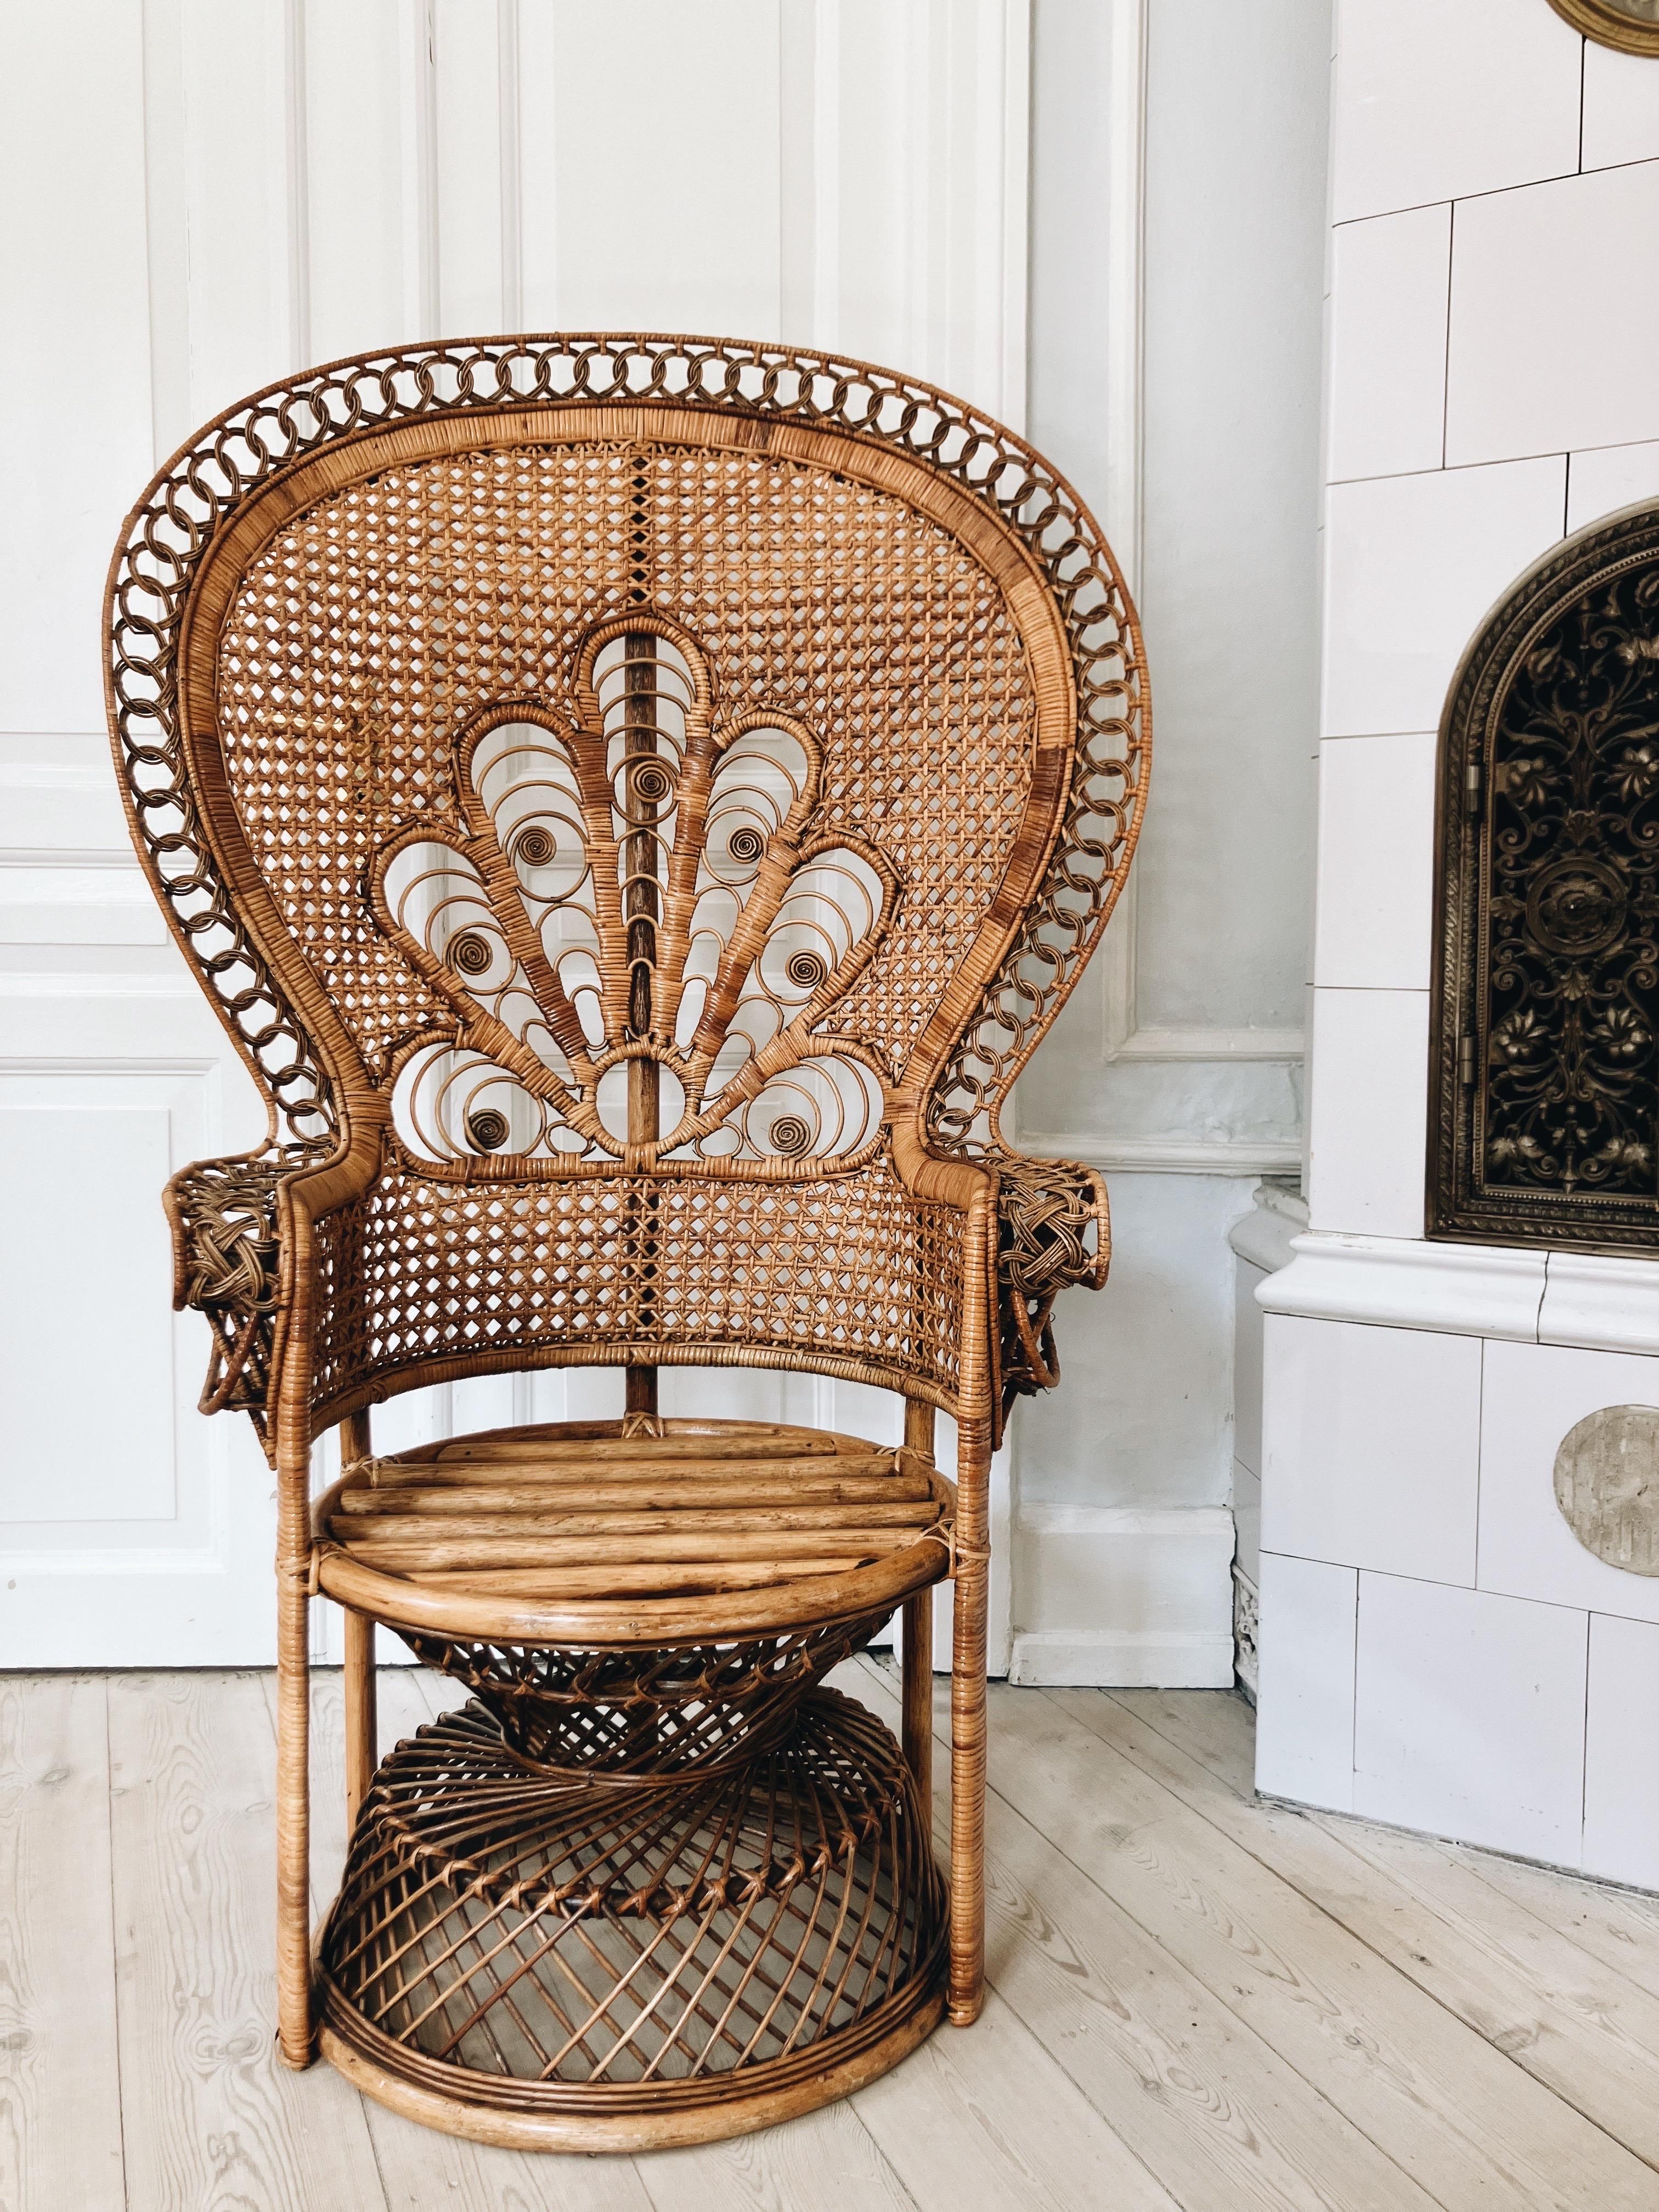 Französischer Pfauenstuhl aus den 1960er Jahren.

Der Pfauenstuhl ist aus gewebtem Bambus hergestellt. Mit dekorativen Schnitzereien und in gutem Vintage-Zustand. Stabel und mit sehr wenigen Gebrauchsspuren. 

Der Stuhl stammt von einer älteren